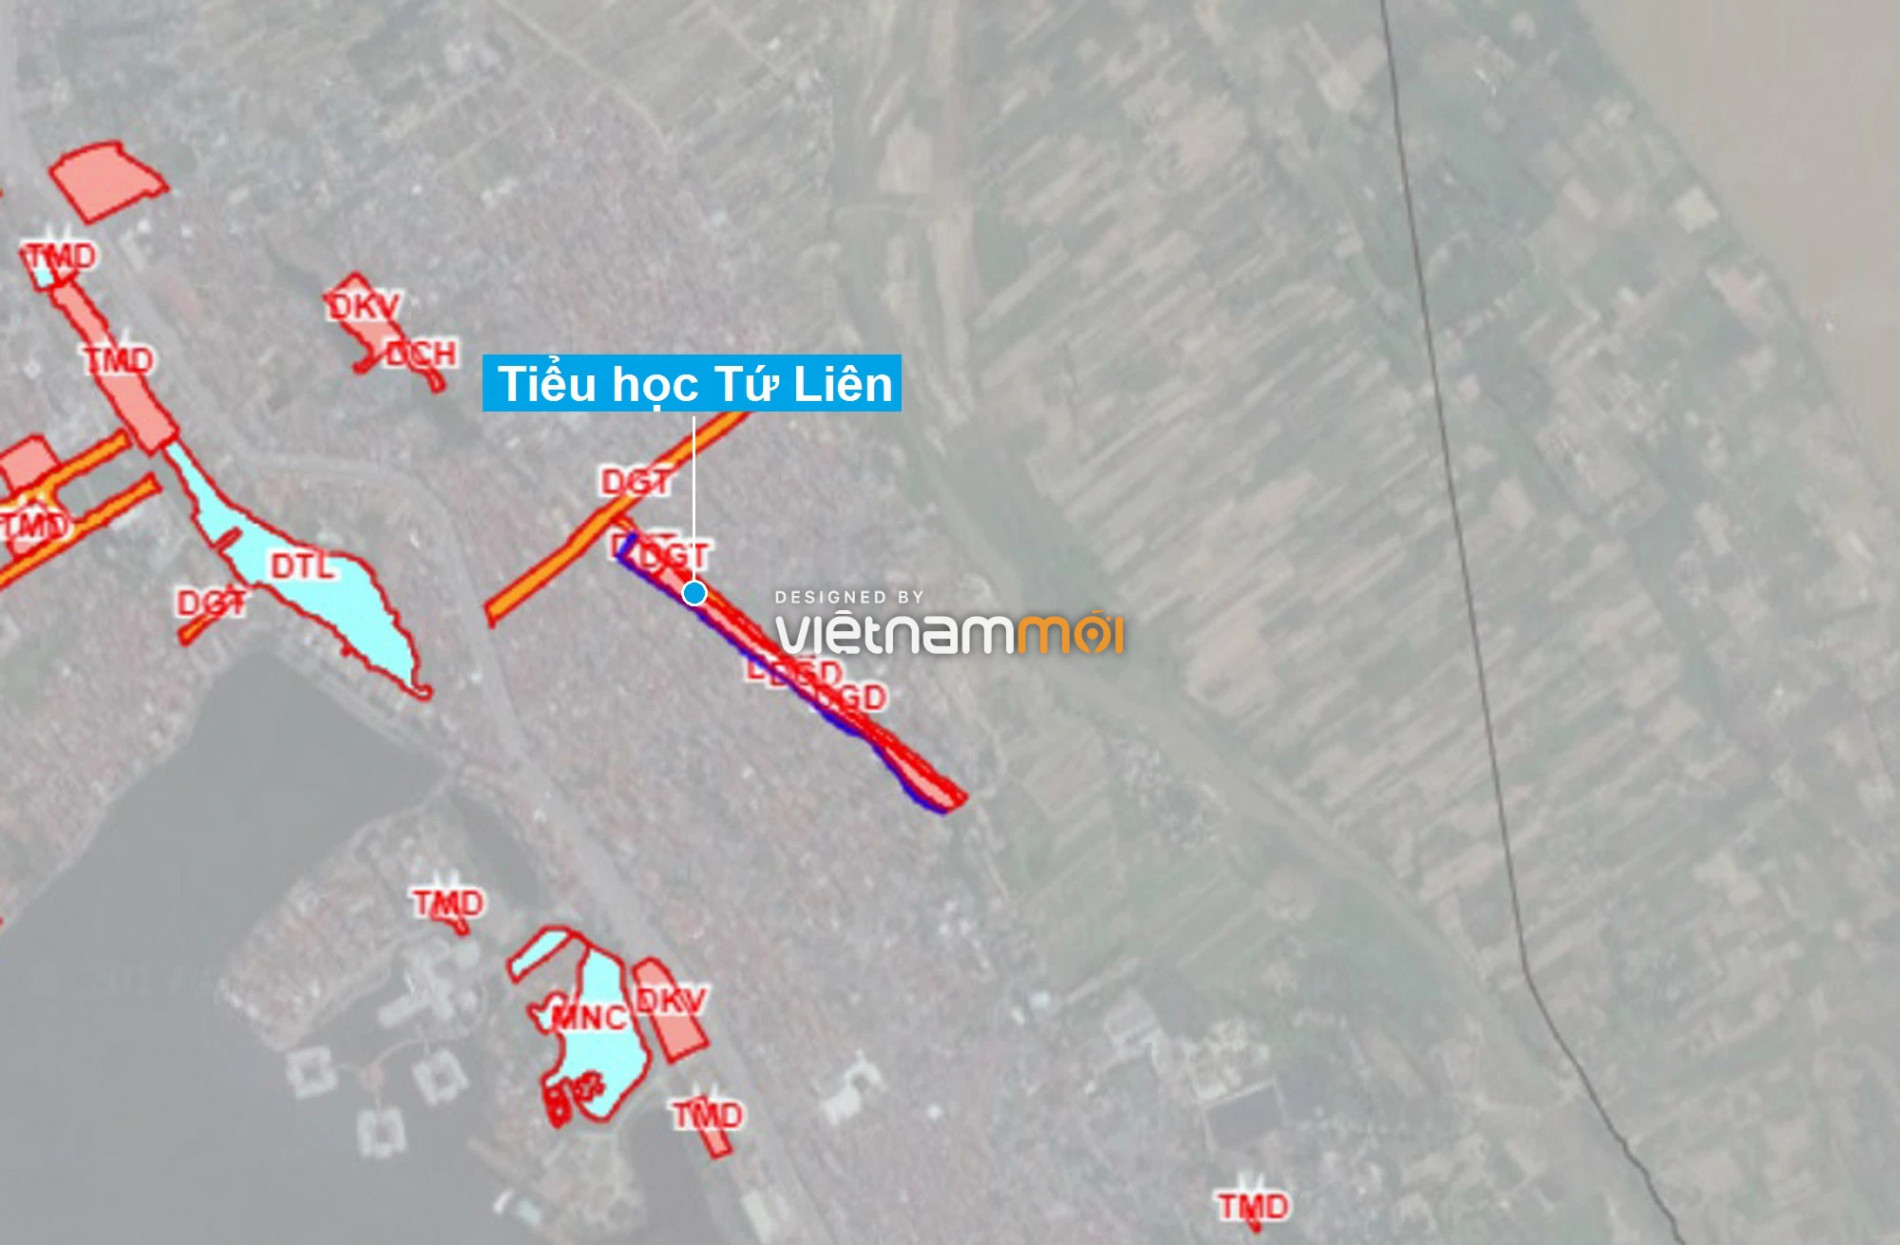 Những khu đất sắp thu hồi để mở đường ở quận Tây Hồ, Hà Nội (phần 6) - Ảnh 13.